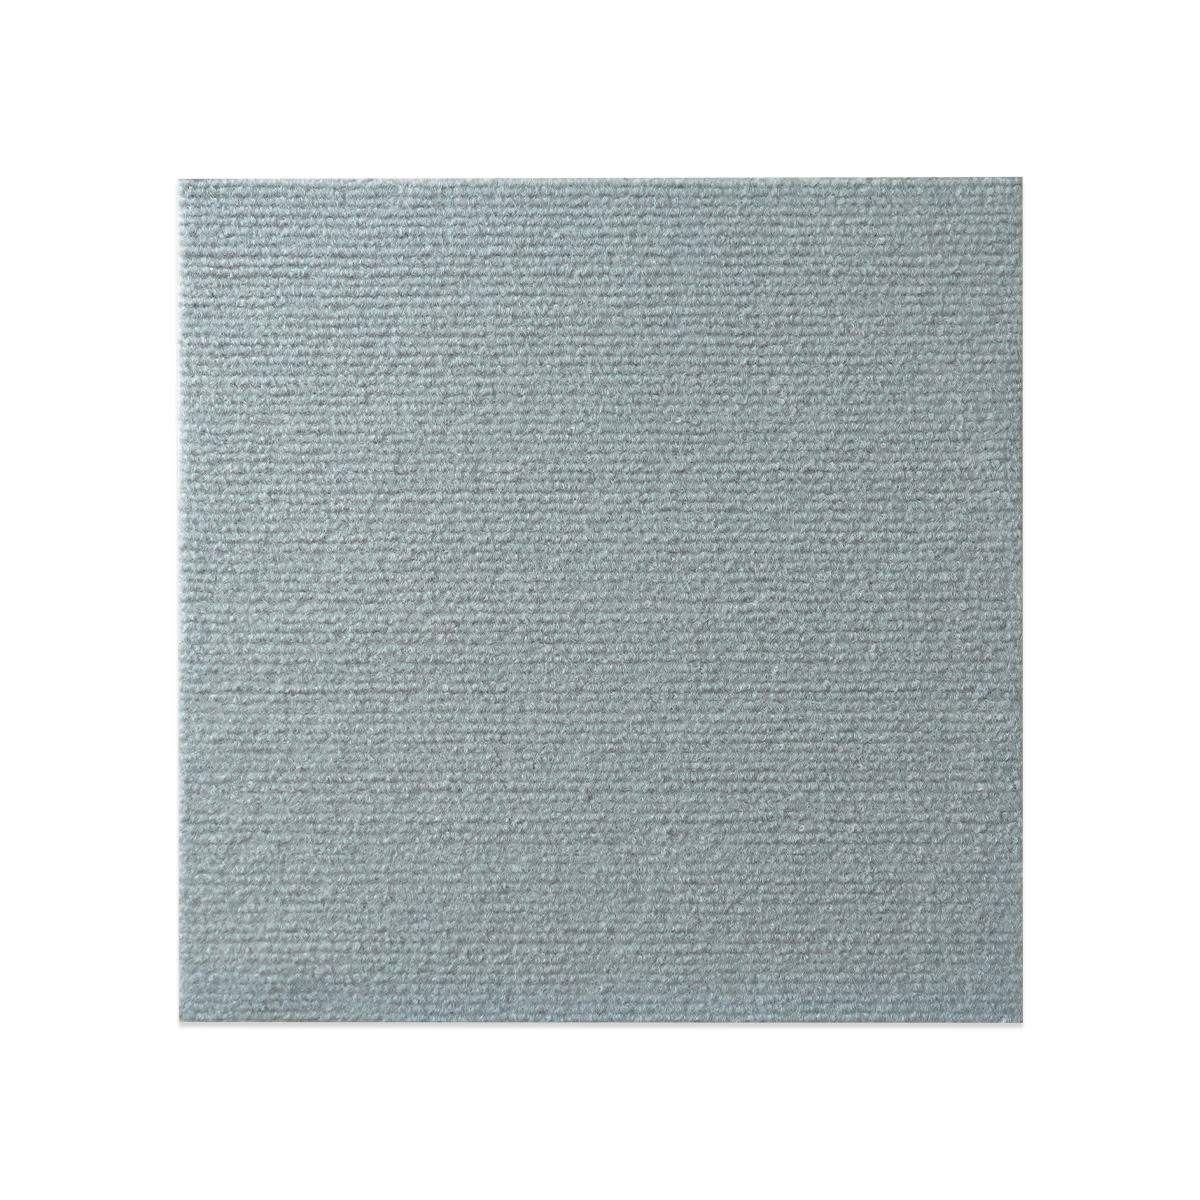 マット/絨毯 〔約190×240cm ベージュ〕 手洗いOK すべりにくい ホット